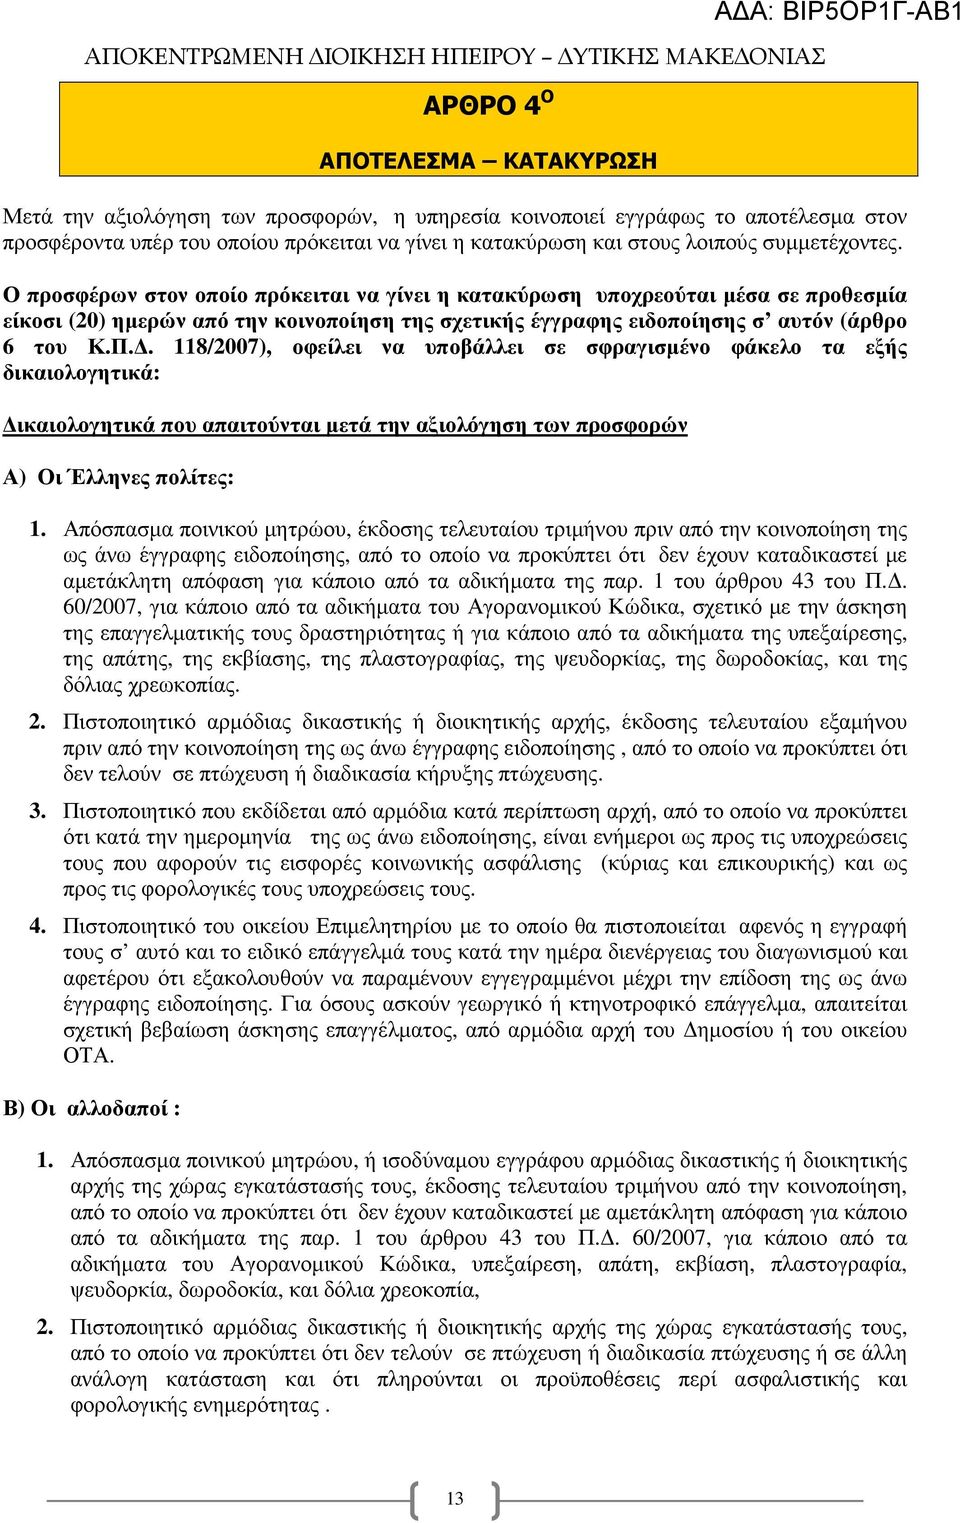 . 118/2007), οφείλει να υποβάλλει σε σφραγισµένο φάκελο τα εξής δικαιολογητικά: ικαιολογητικά που απαιτούνται µετά την αξιολόγηση των προσφορών Α) Οι Έλληνες πολίτες: 1.